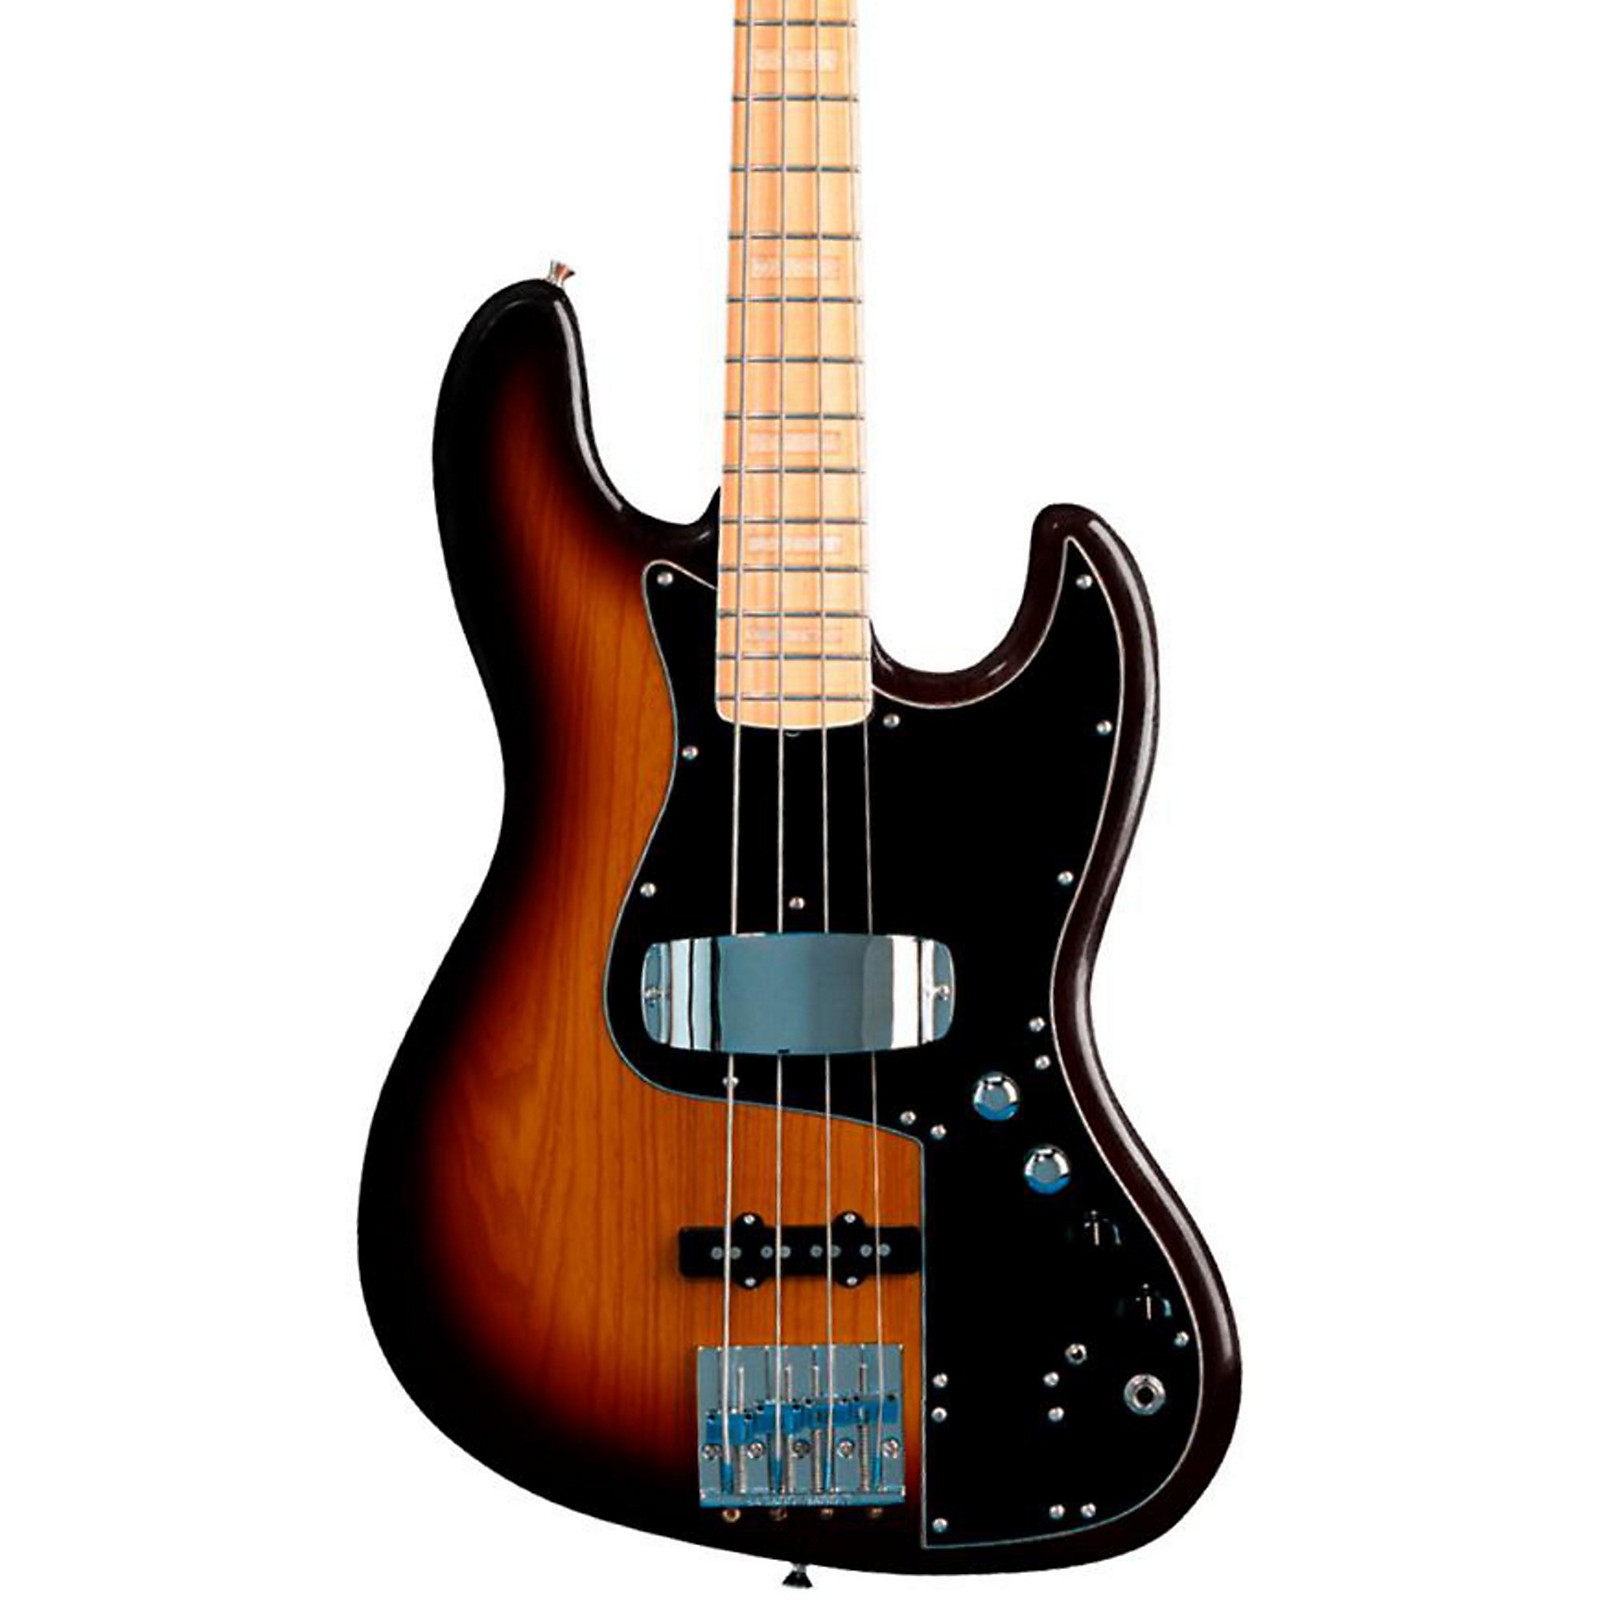 Джаз бас Маркус Миллер. Фендер джаз бас Маркус Миллер. Fender Jazz Bass Marcus Miller Signature. Sire v7 Fender Bass Guitar. Bass 33